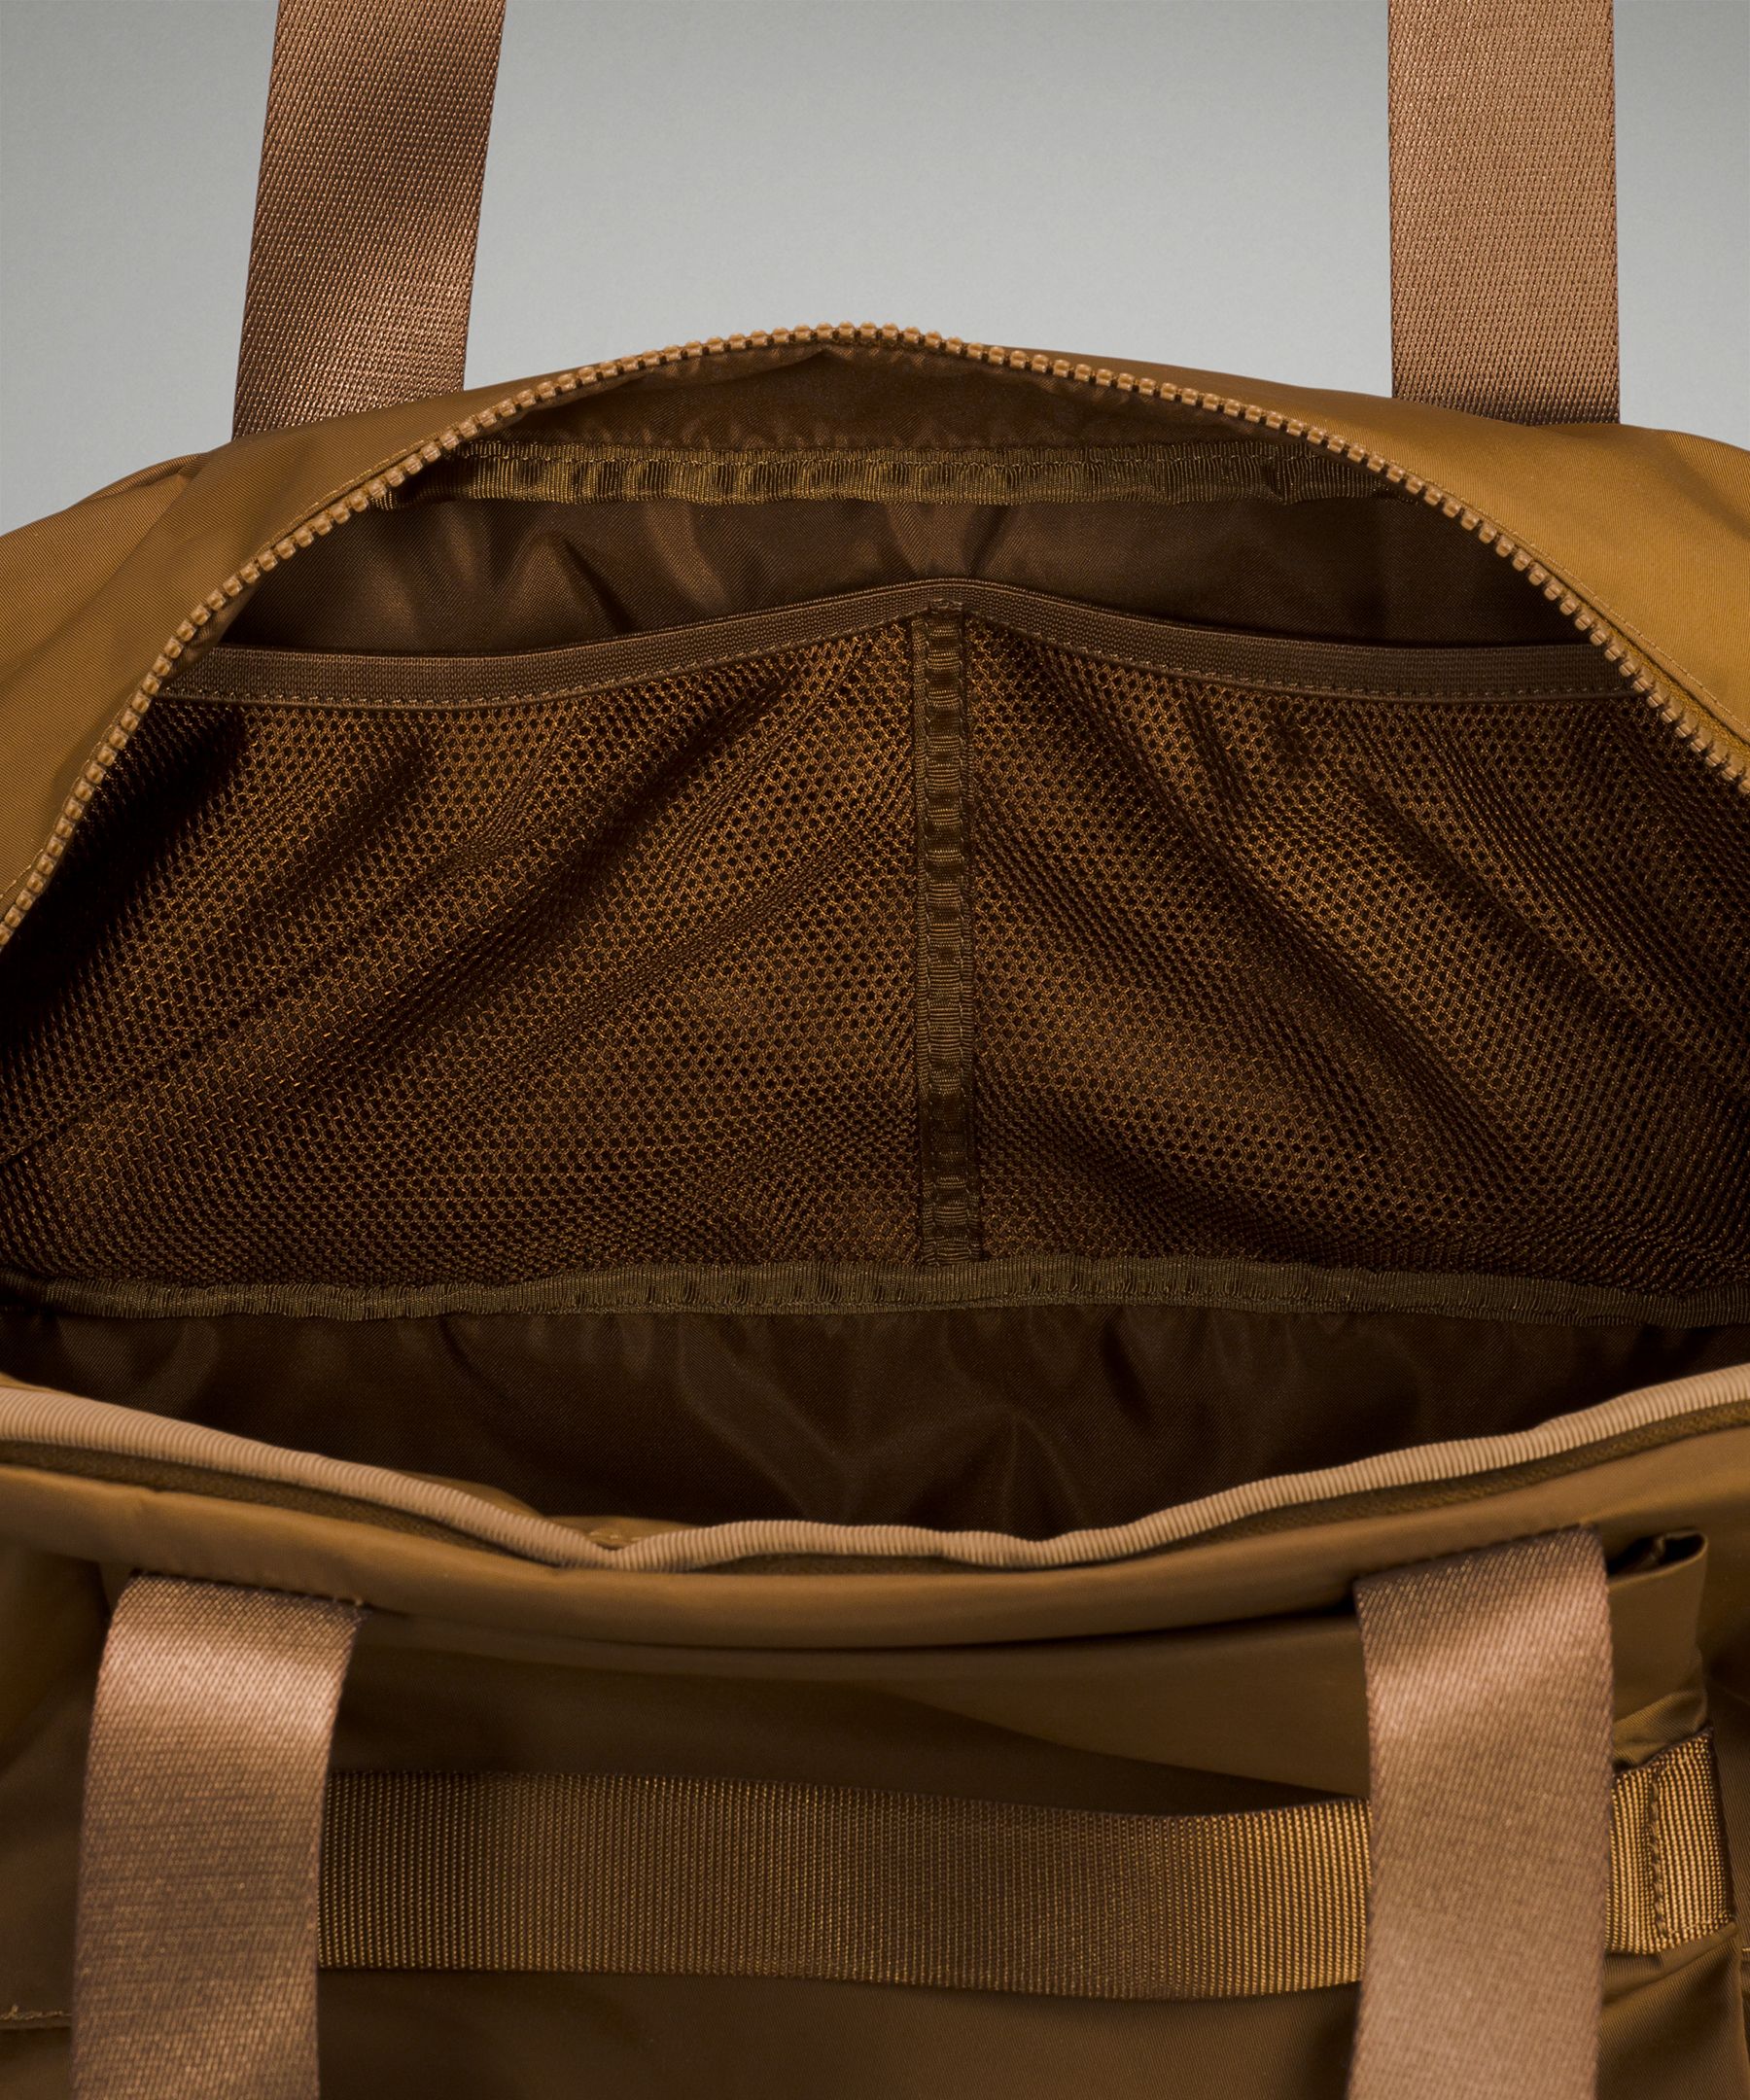 City Adventurer Large Duffle Bag 29L | Women's Bags,Purses,Wallets 